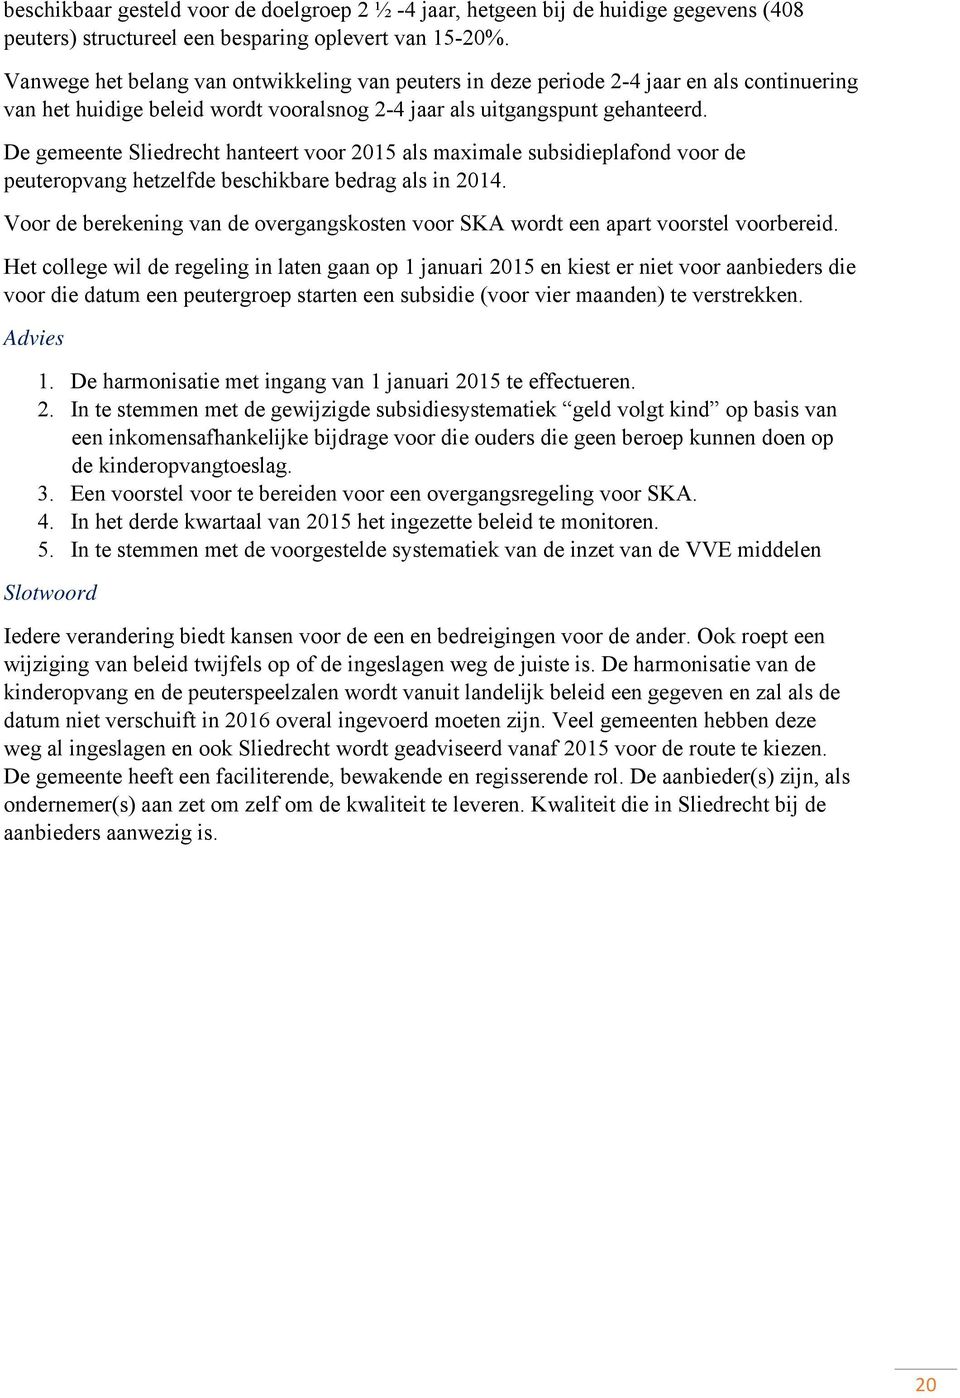 De gemeente Sliedrecht hanteert voor 2015 als maximale subsidieplafond voor de peuteropvang hetzelfde beschikbare bedrag als in 2014.